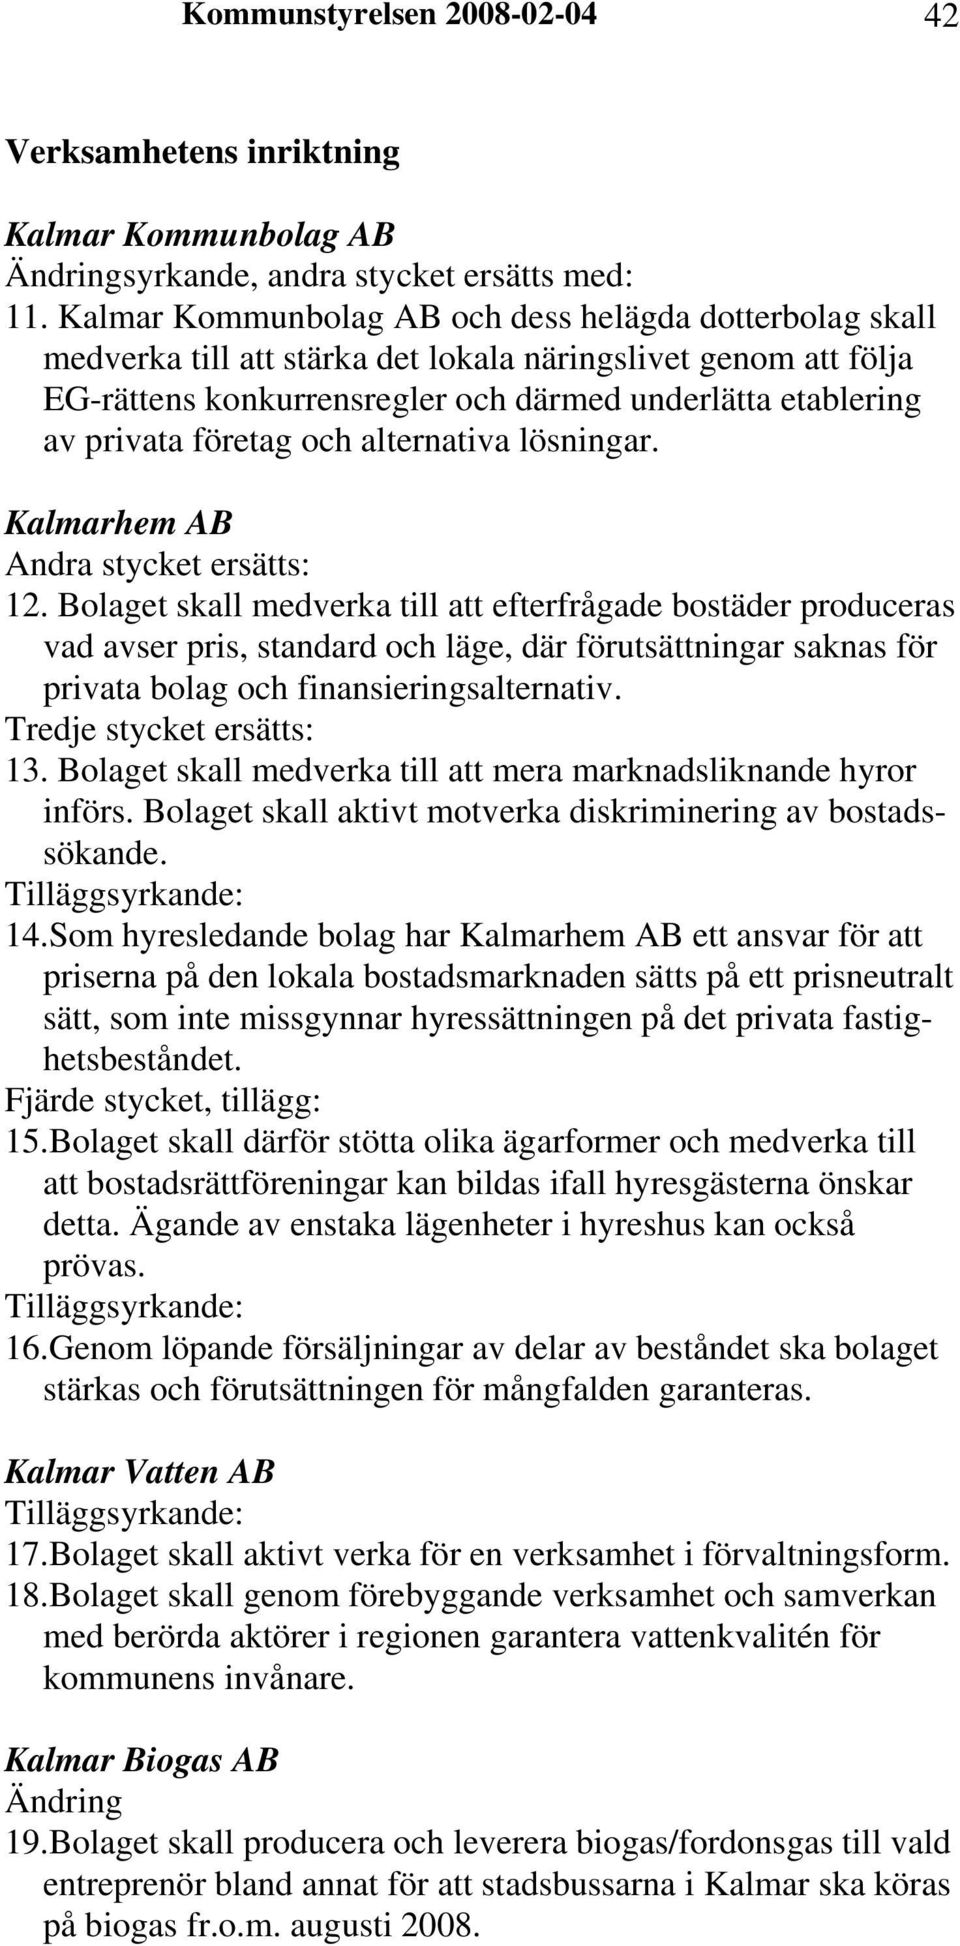 företag och alternativa lösningar. Kalmarhem AB Andra stycket ersätts: 12.